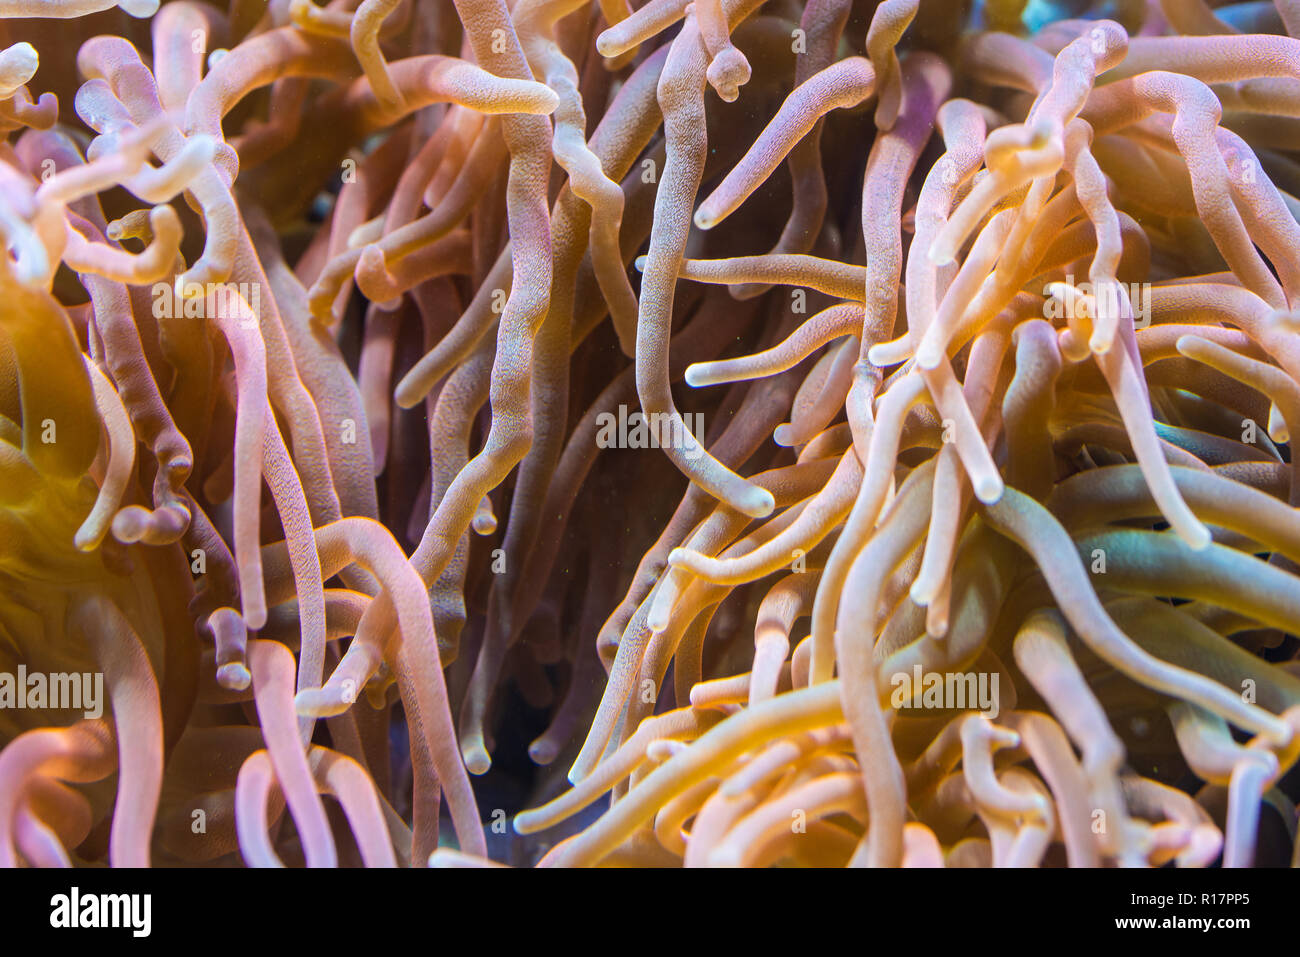 Anemonen Heteractis magnifica, Farbige lange Tentakel Anemone Stockfoto